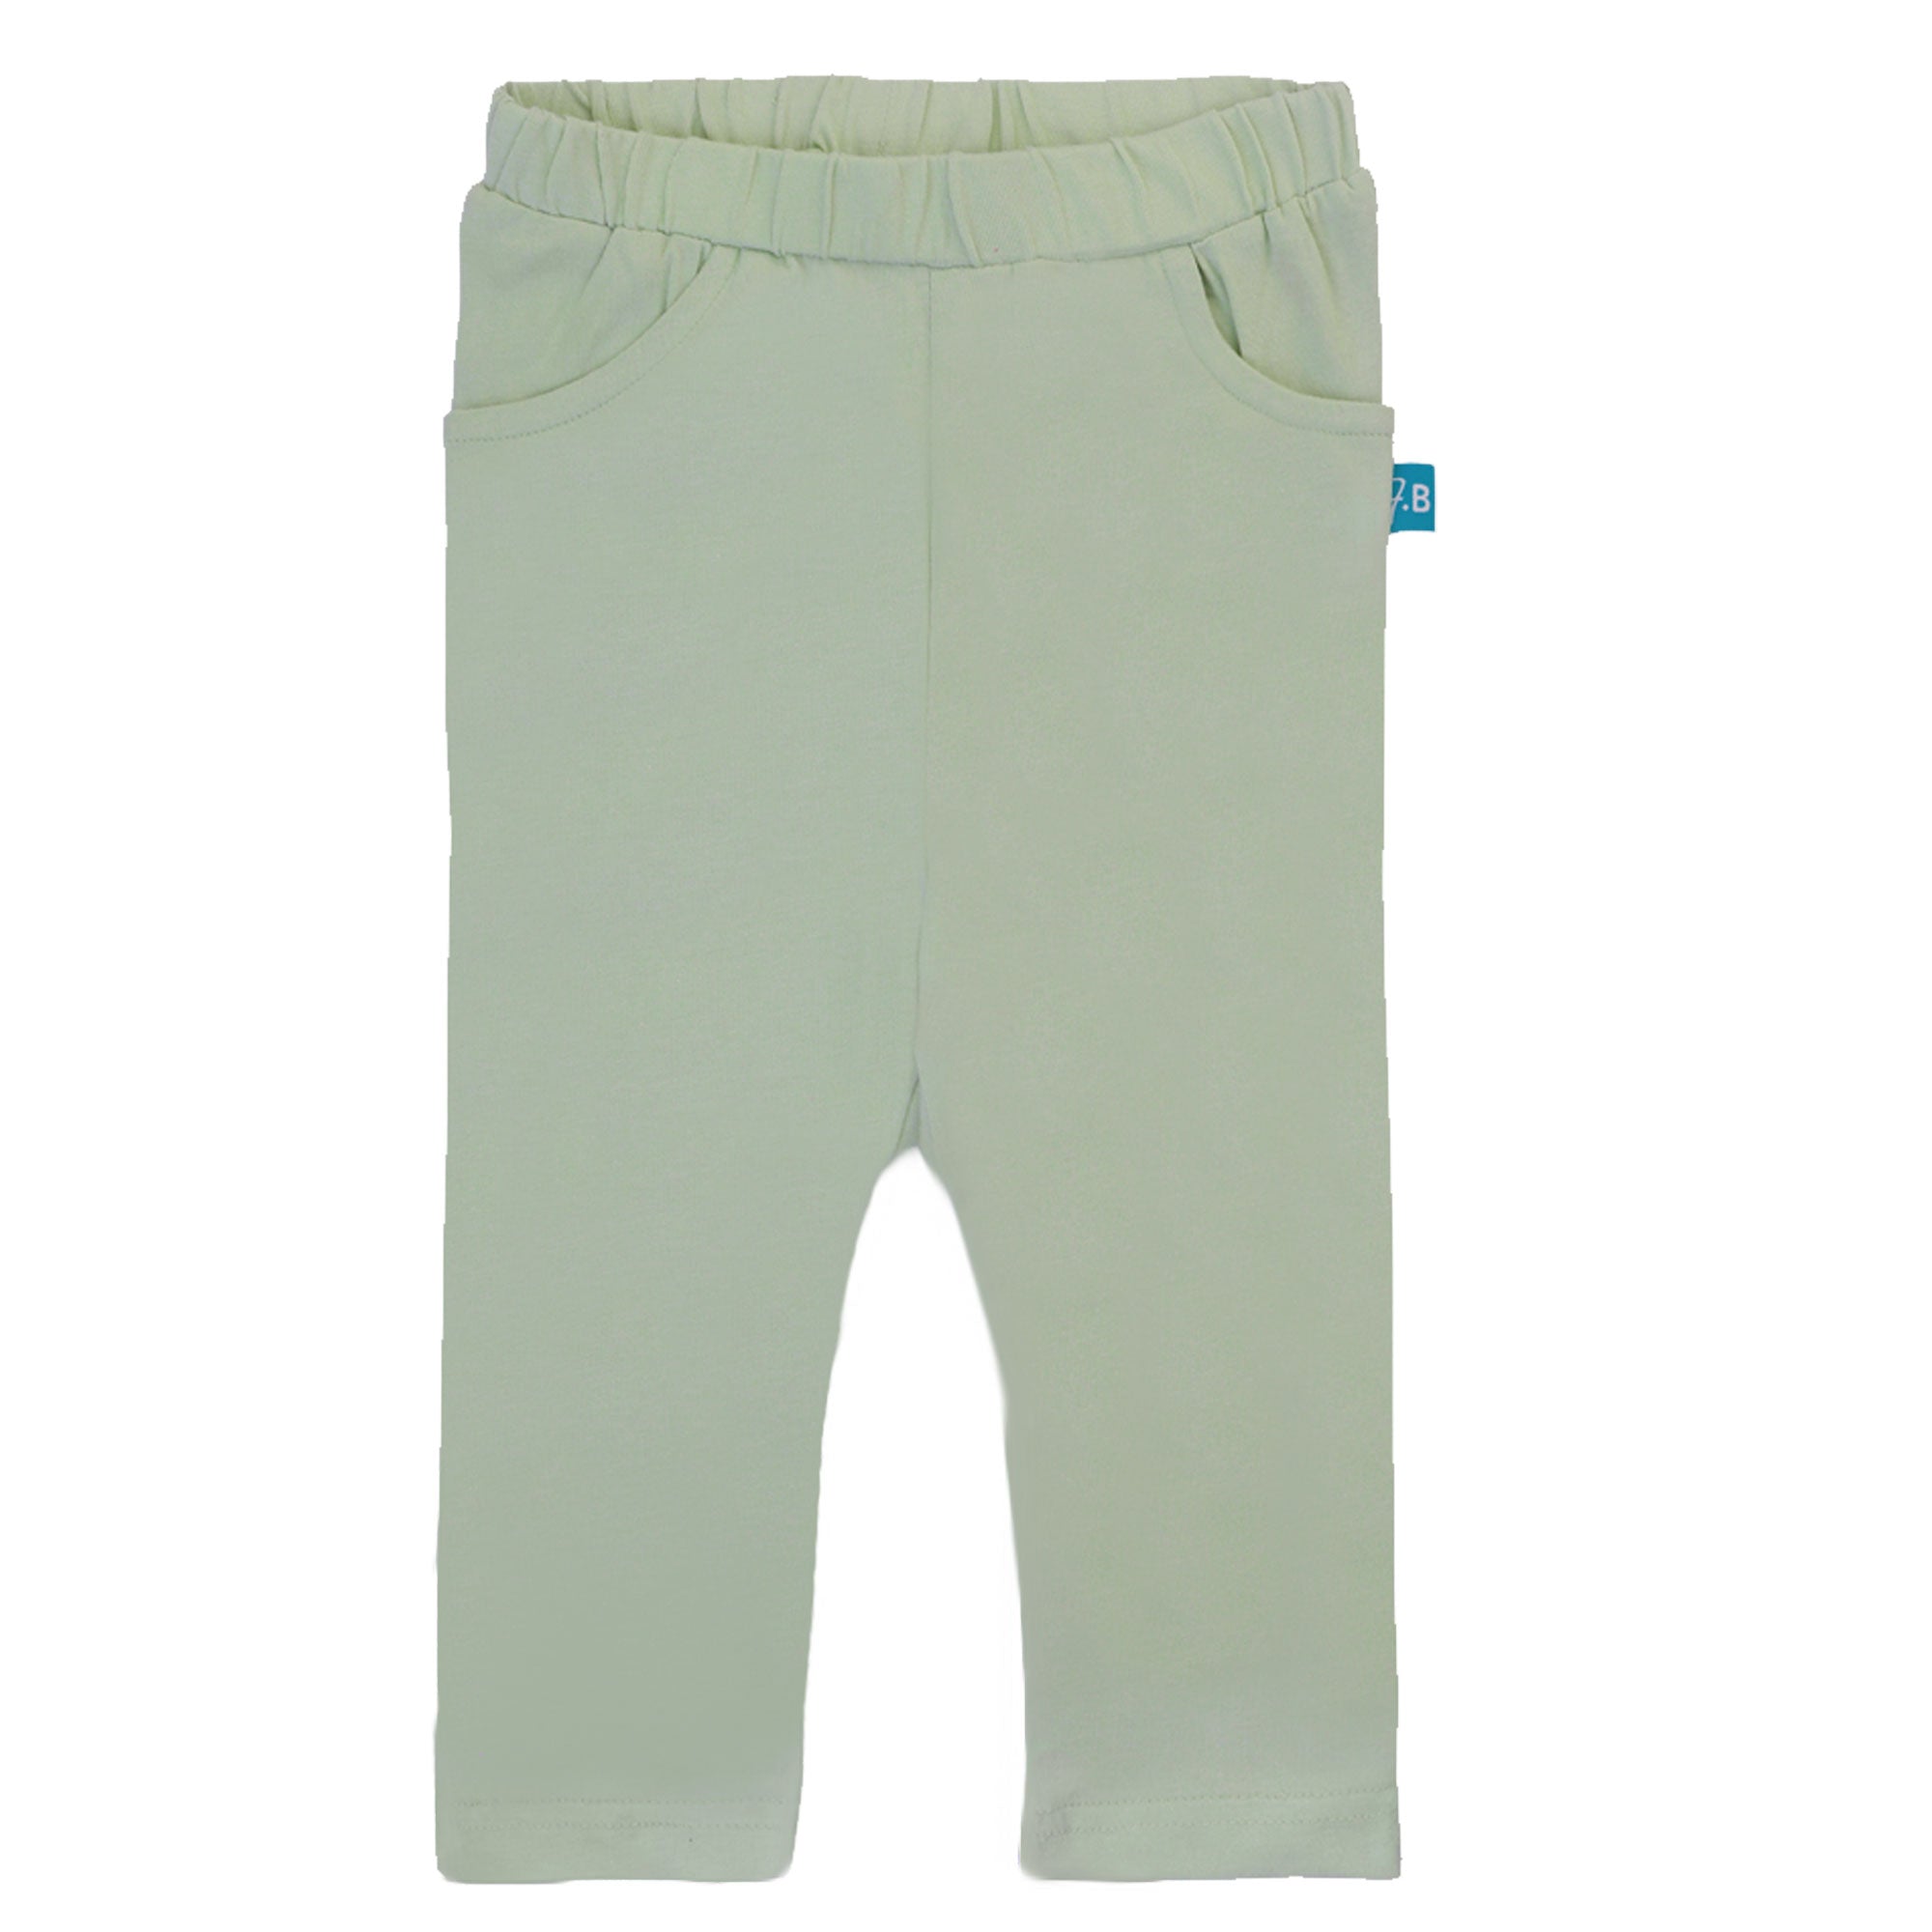 FG-4417 - 3PK Cotton Pants